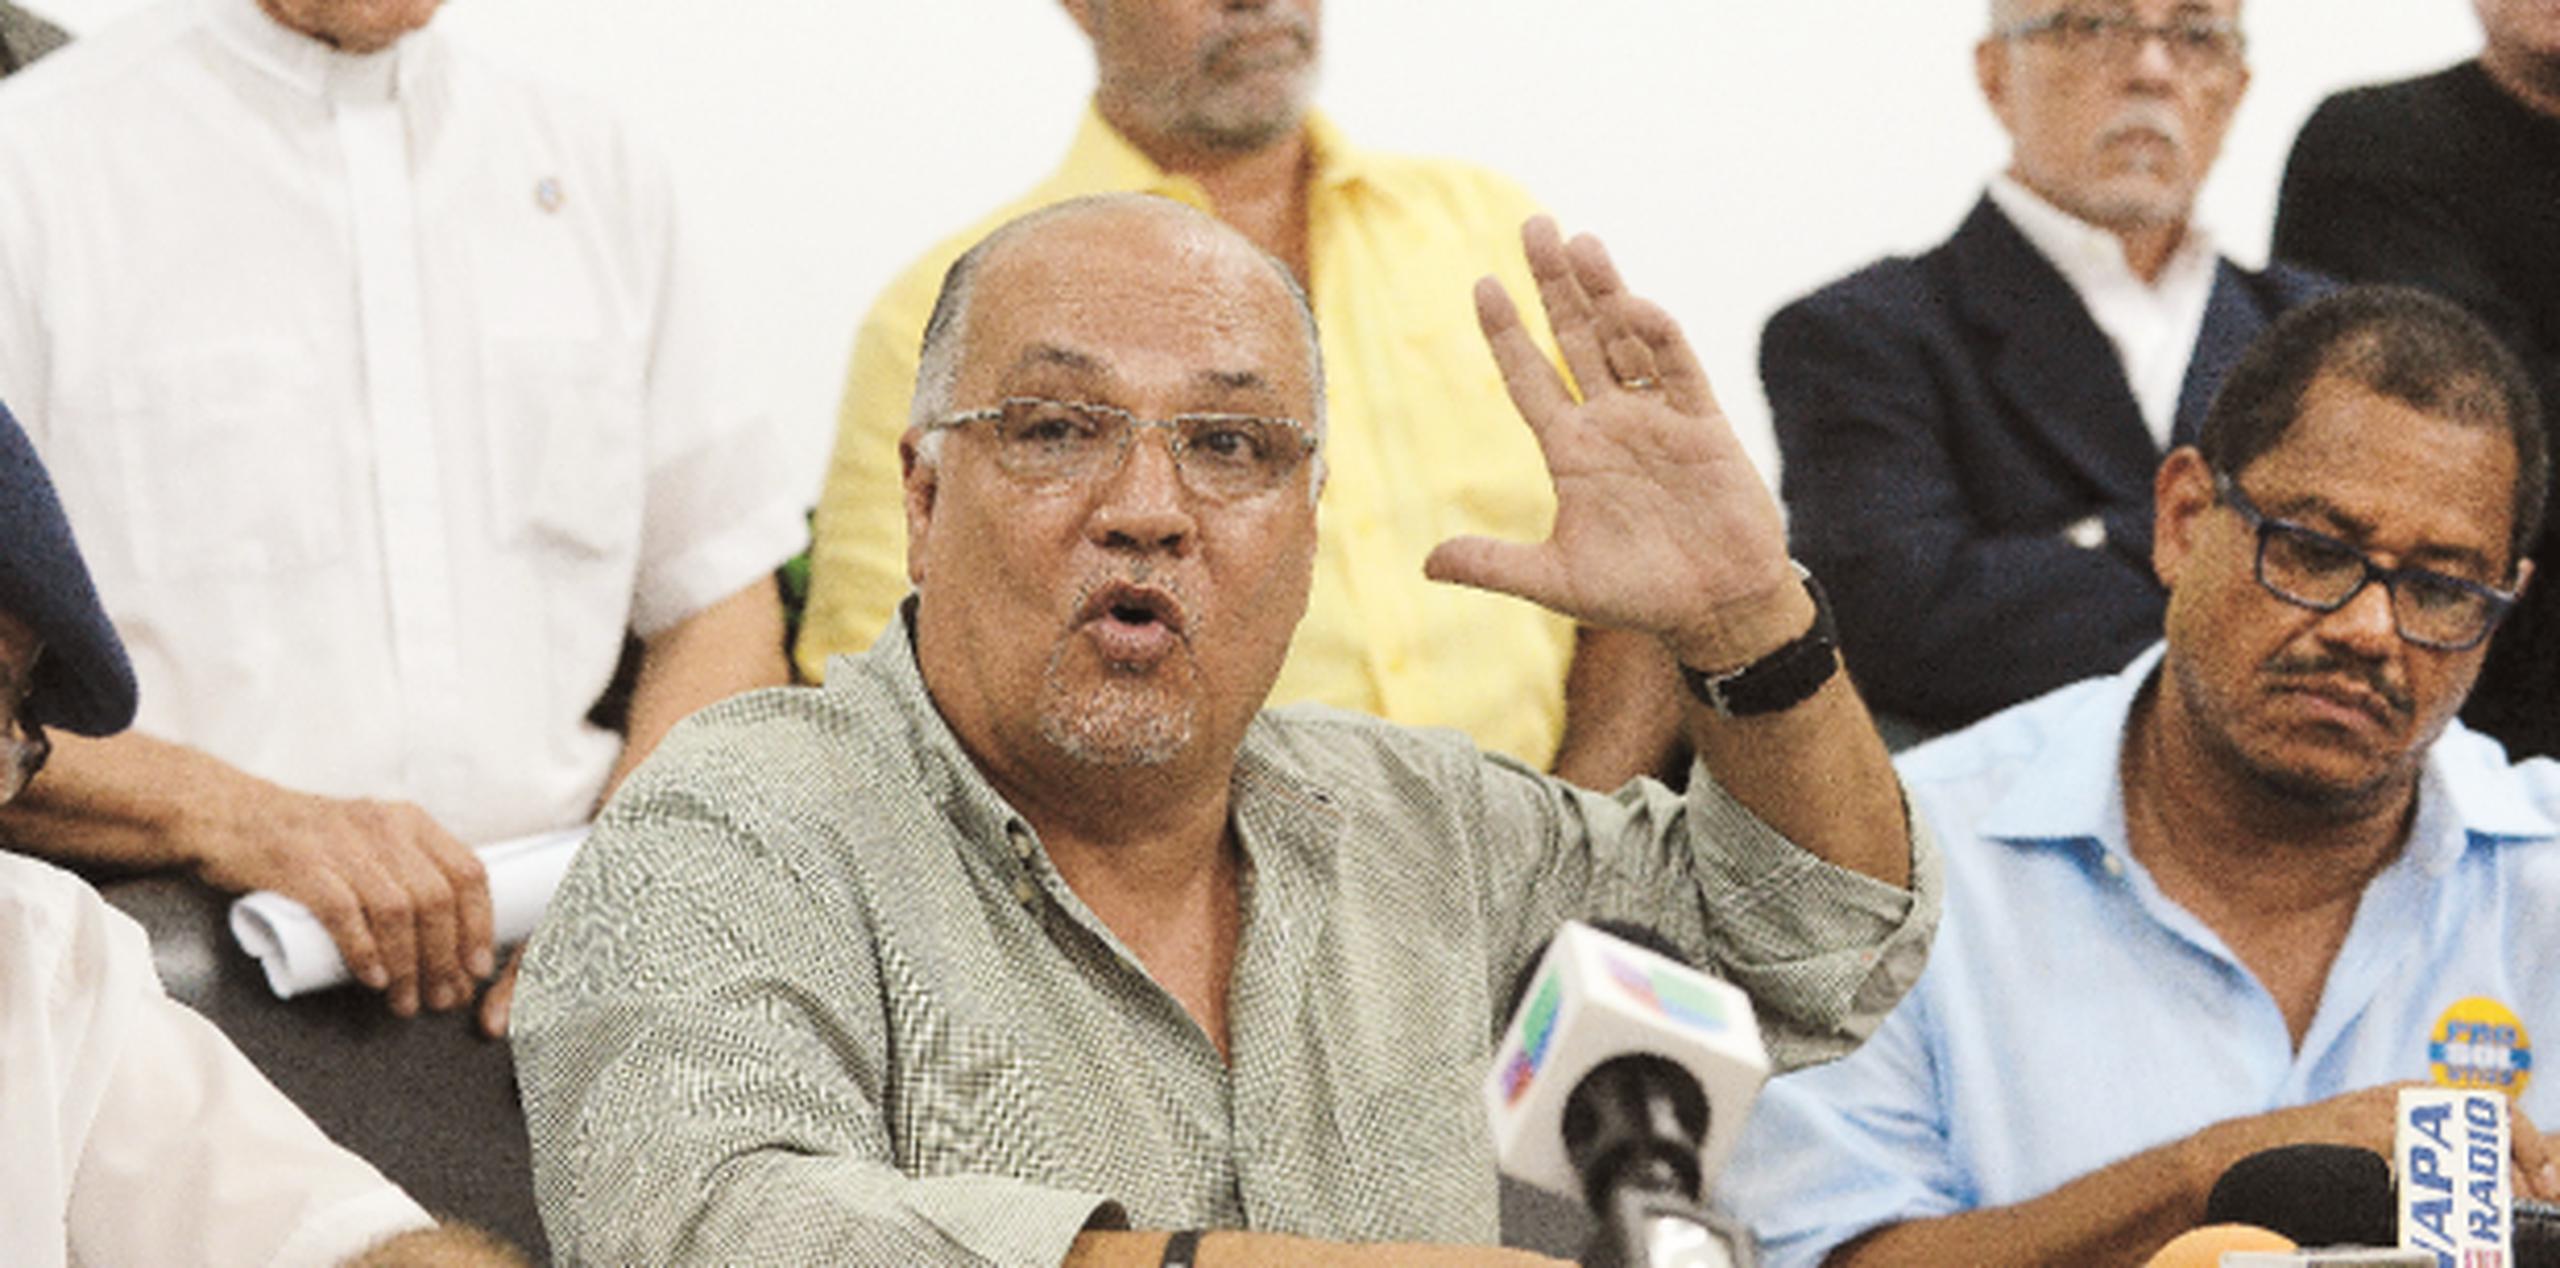 Padre Pedro criticó fuertemente a la Legislatura por la inacción ante la situación que impera en la UPR. (Archivo)